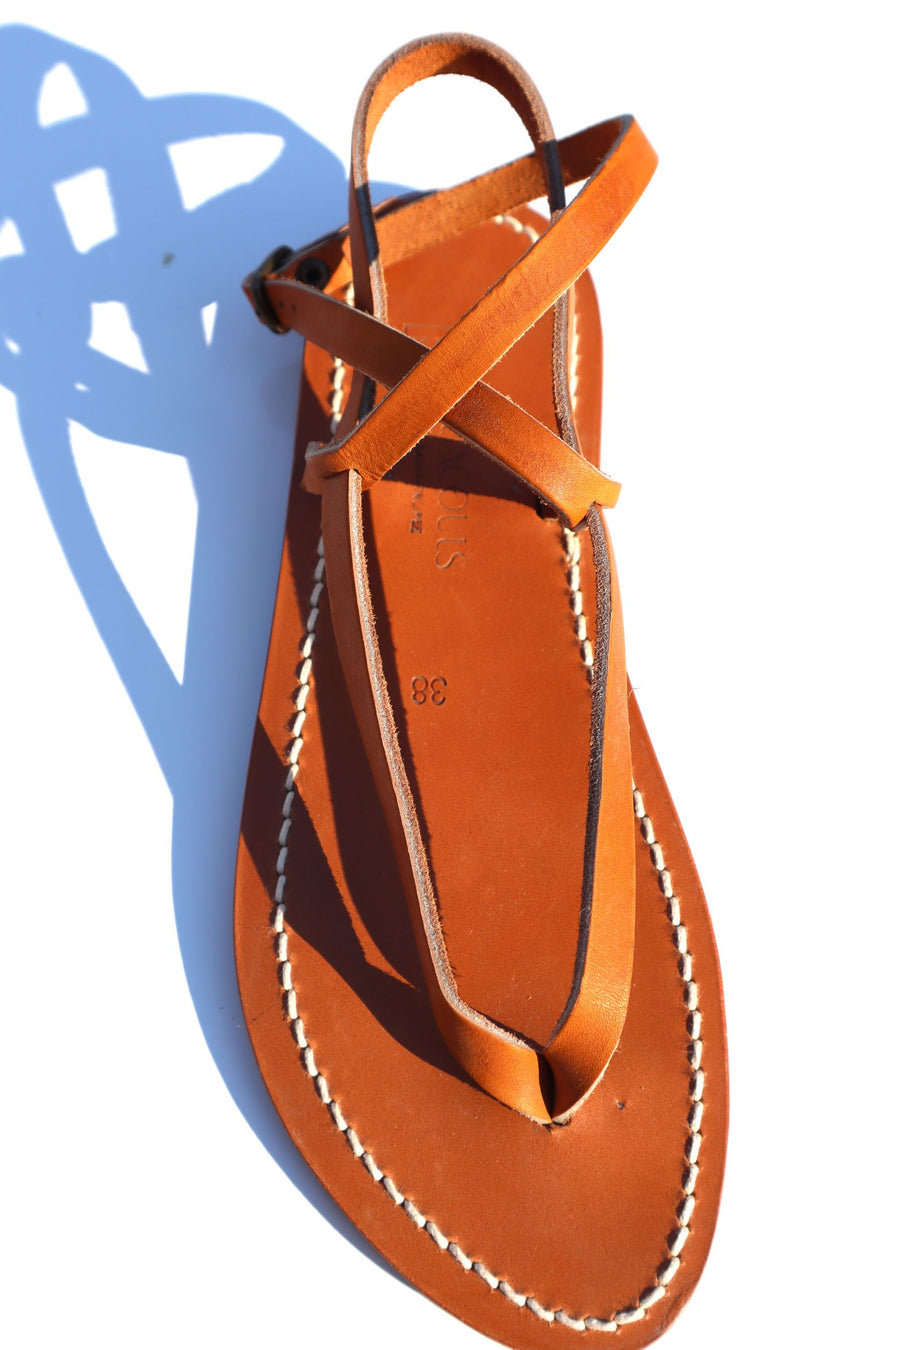 K. JACQUES Delta Sandal in Color: 